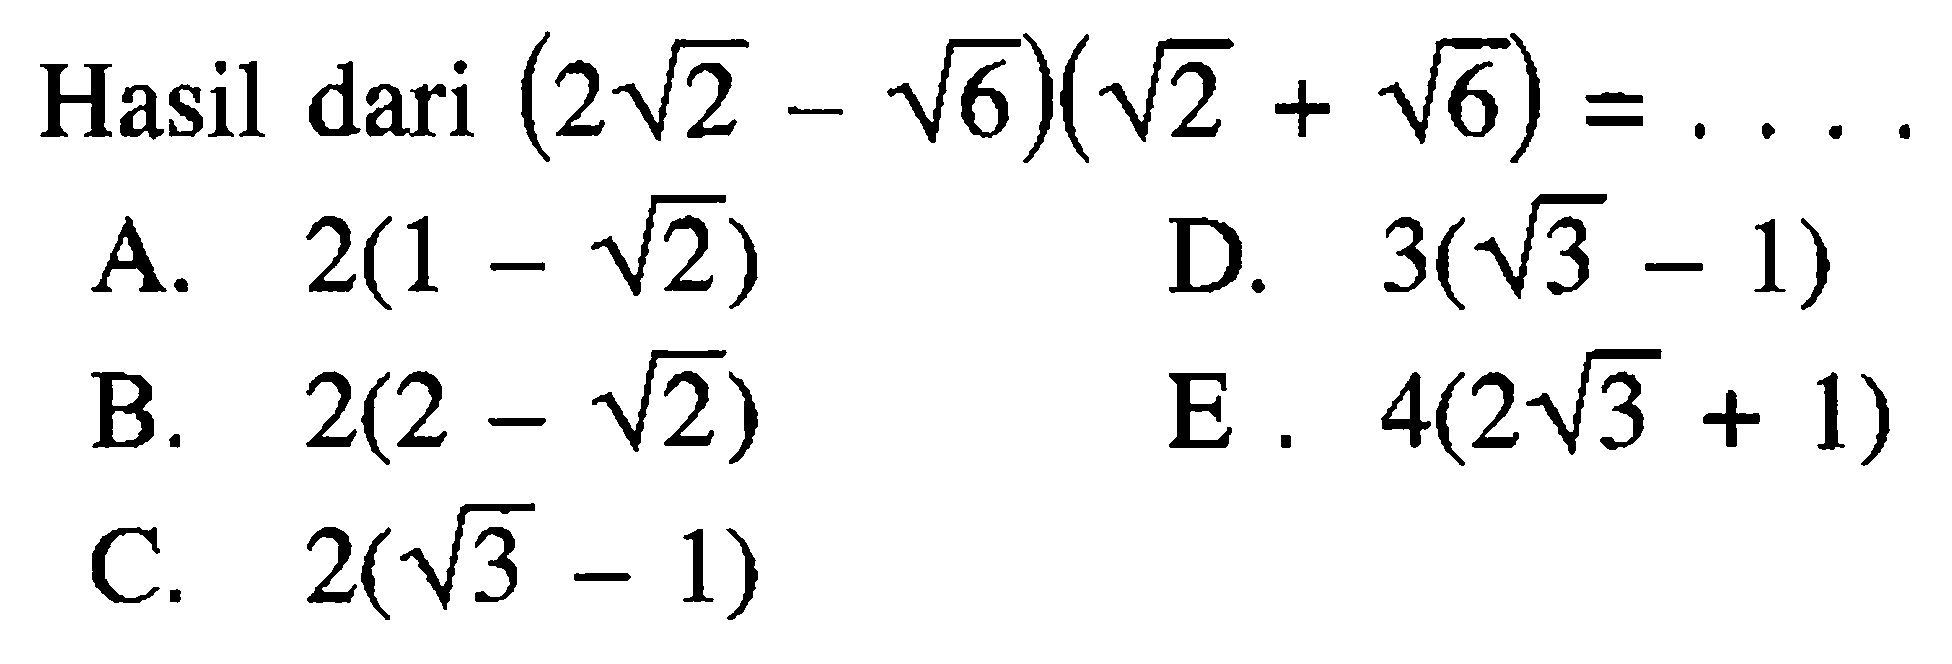 Hasil dari (2 akar(2) - akar(6))(akar(2) + akar(6)) =...